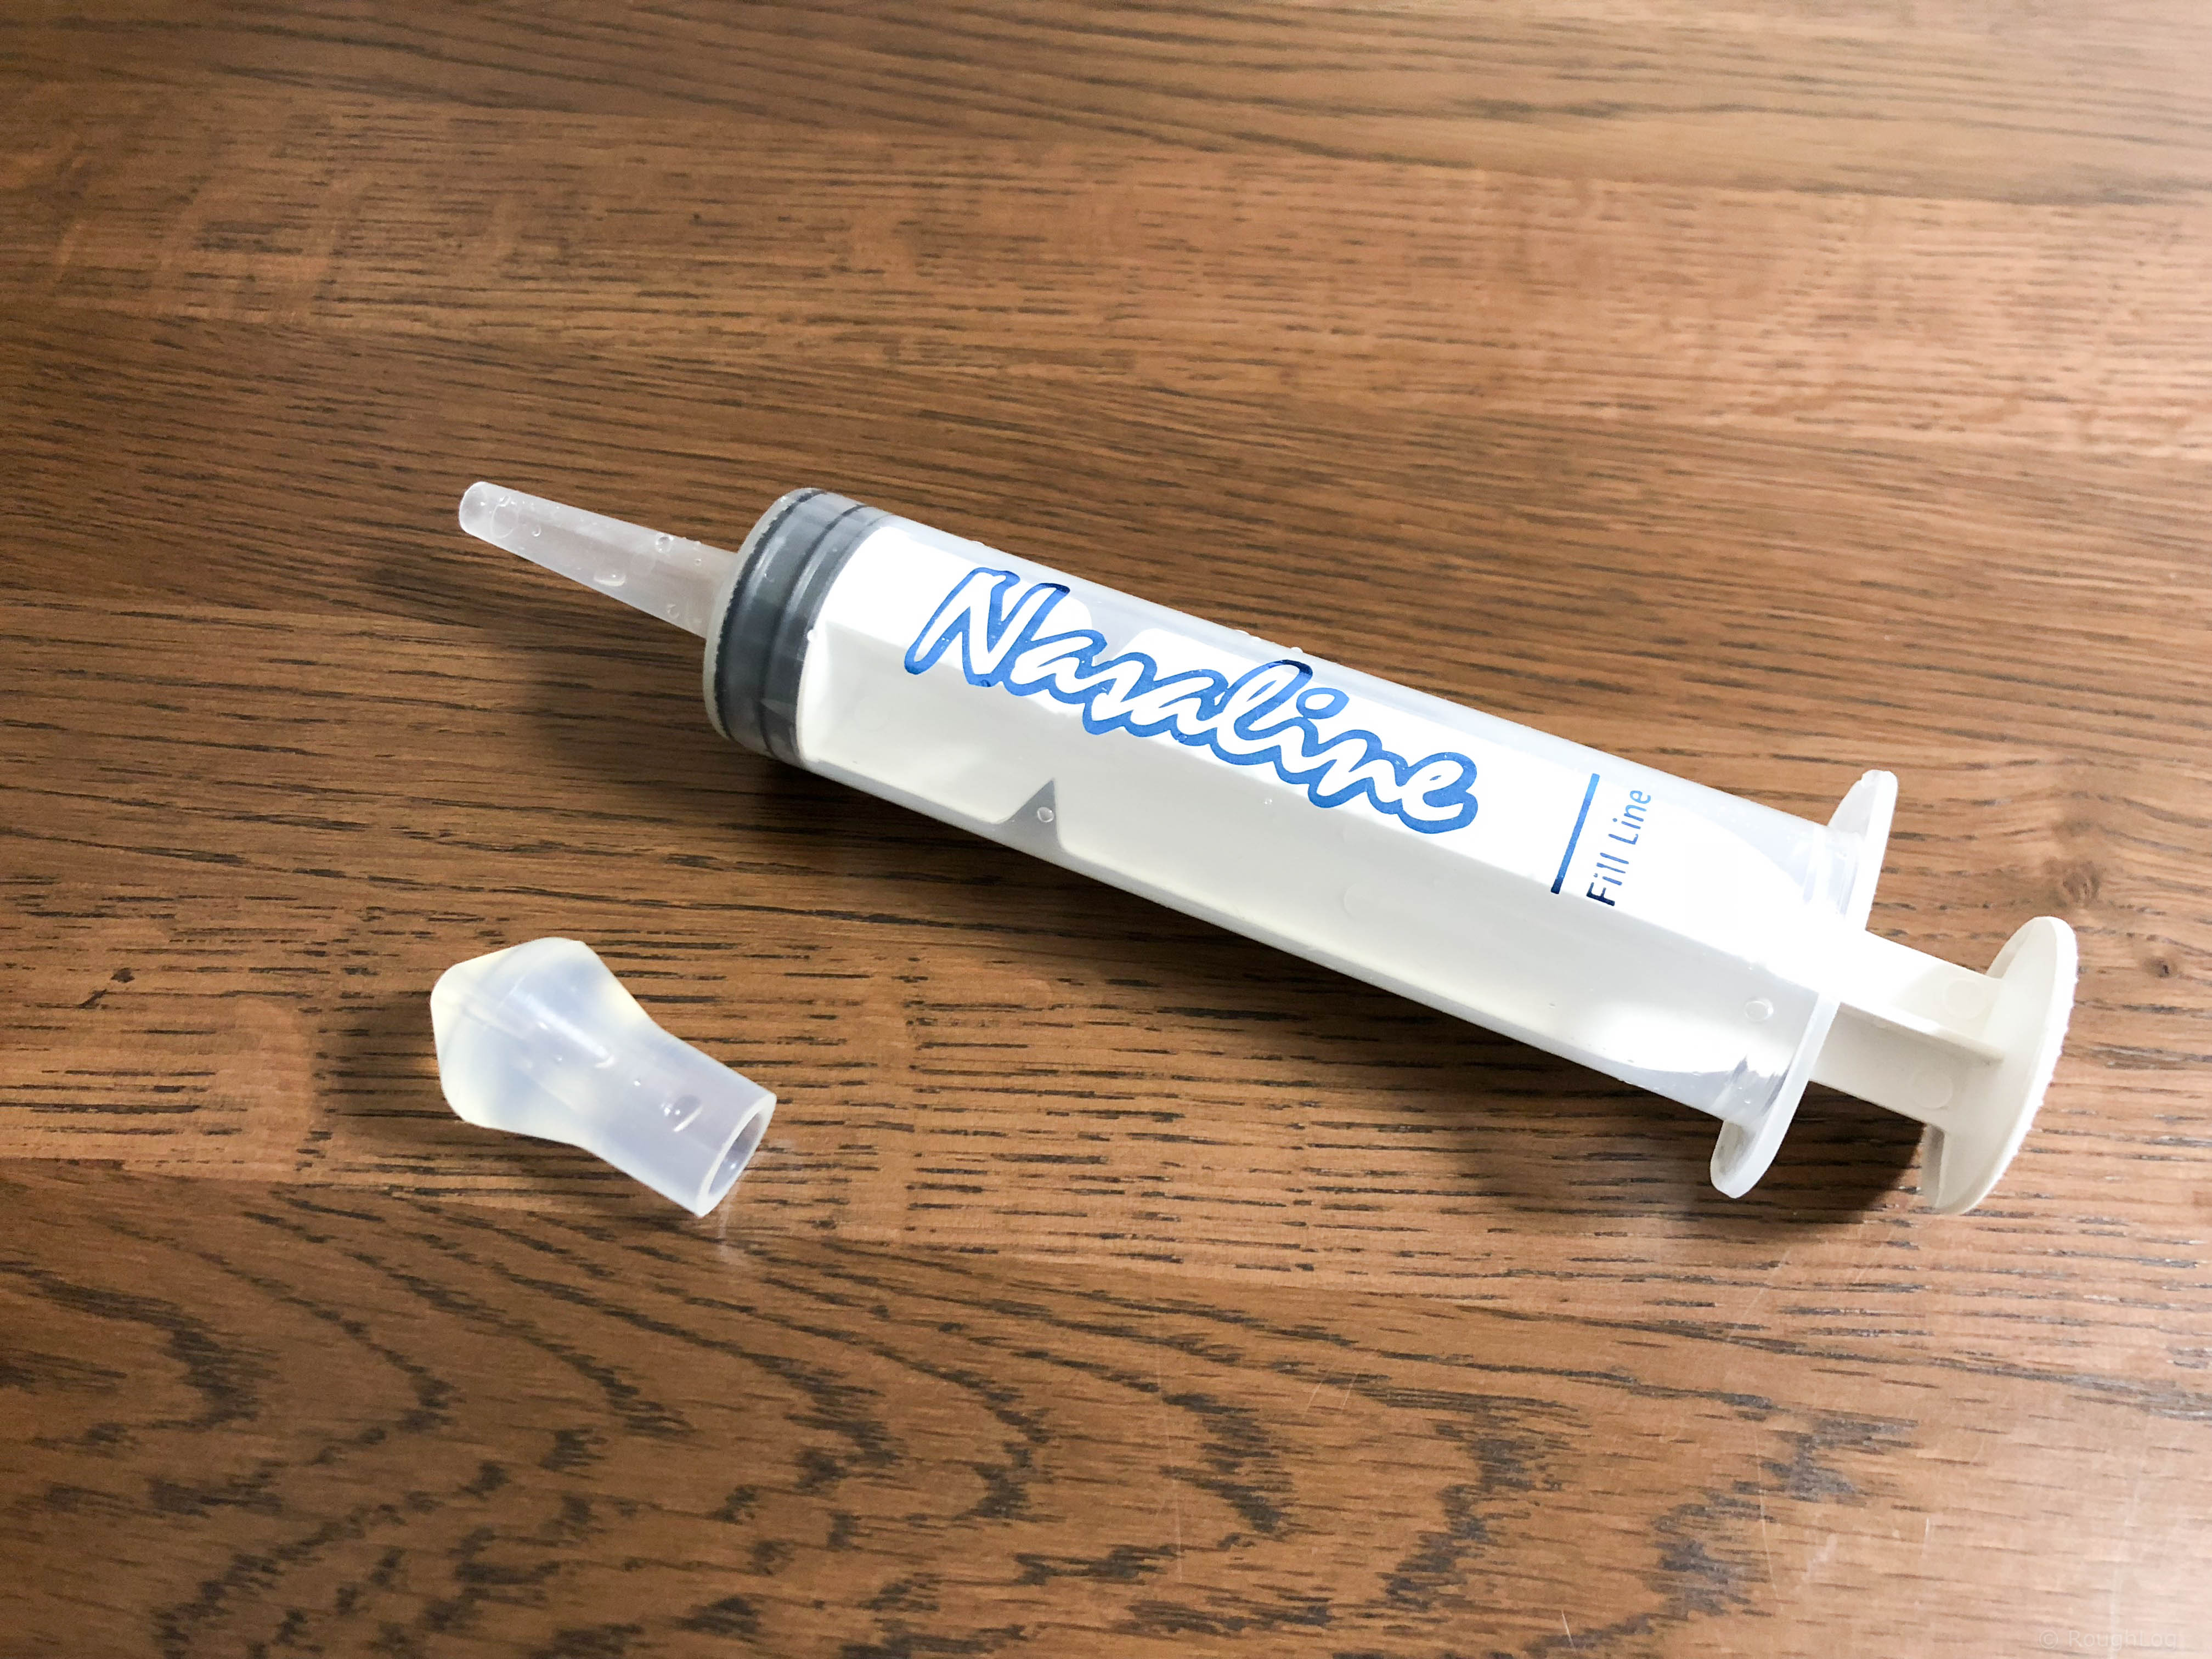 ナサリン鼻洗浄器はお手入れ簡単で衛生的